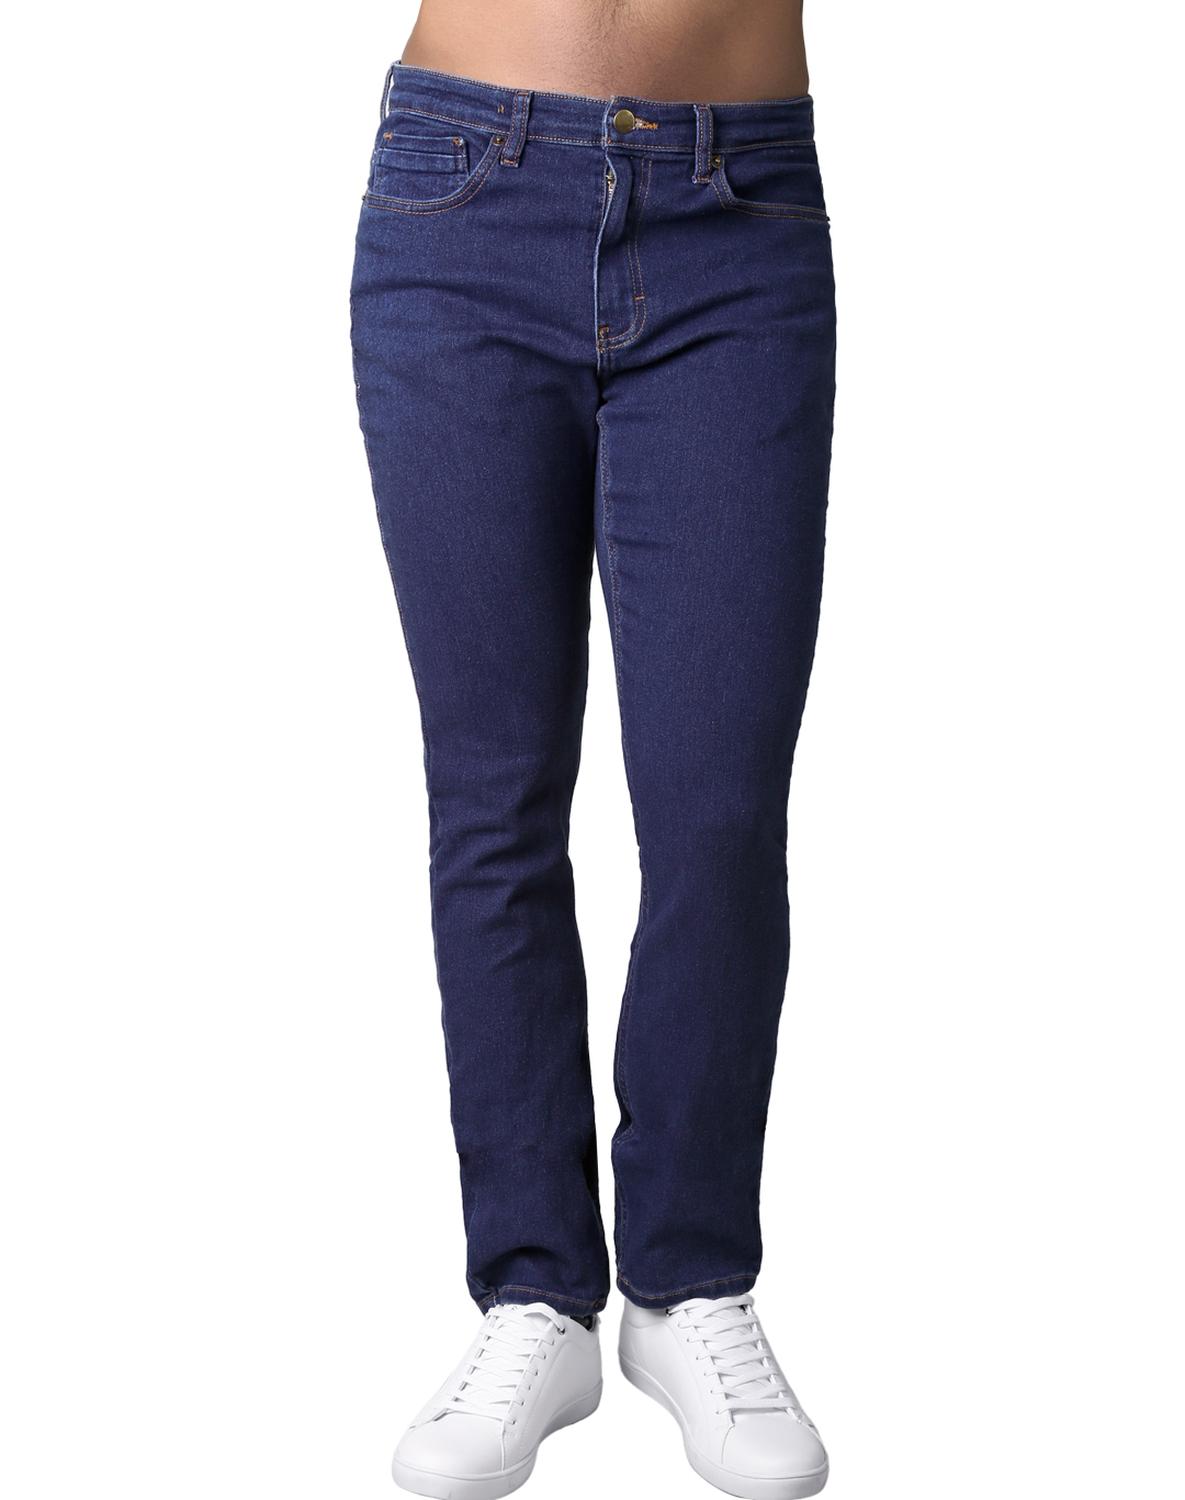 Jeans Básico Slim Hombre Azul Stfashion Ryan 63104423